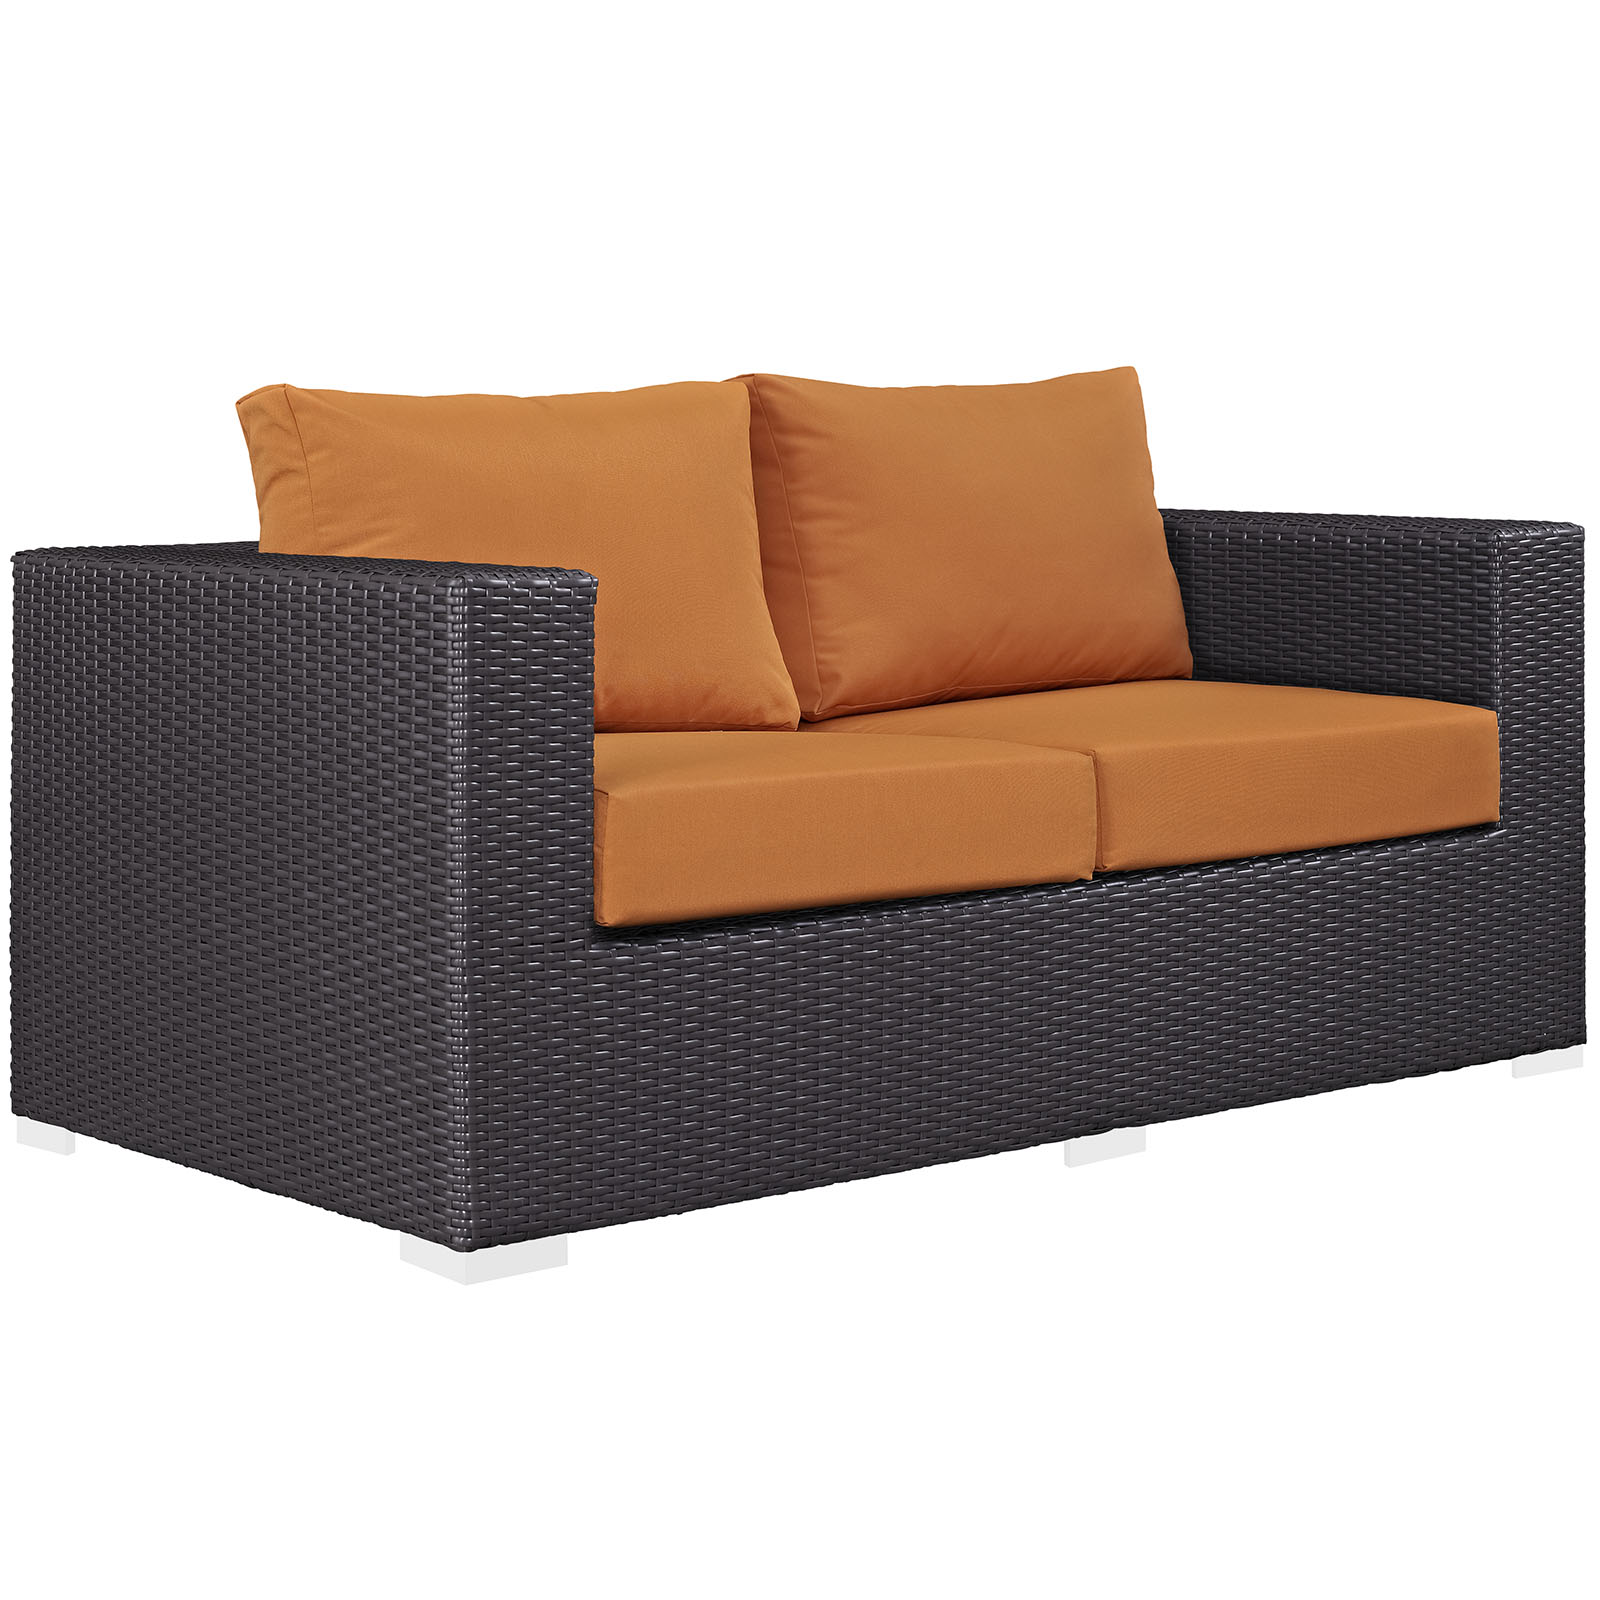 Modway Convene 5 Piece Outdoor Patio Sofa Set in Espresso Orange - image 5 of 7